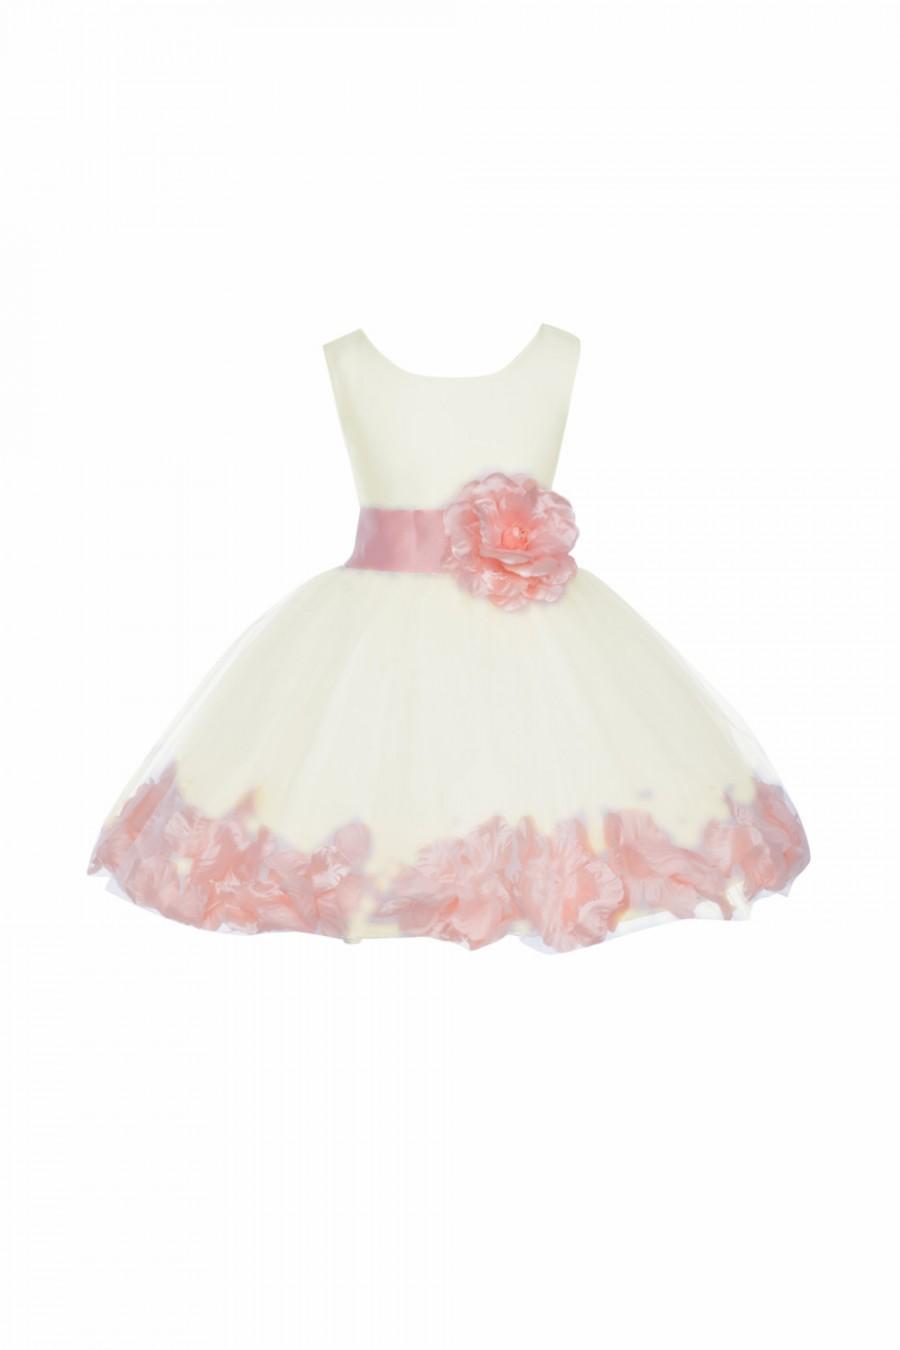 Hochzeit - Ivory Flower Girl dress sash pageant petals wedding bridal children bridesmaid toddler elegant sizes 6-18m 2 3t 4 5t 6 6x 7 8 10 12 14 